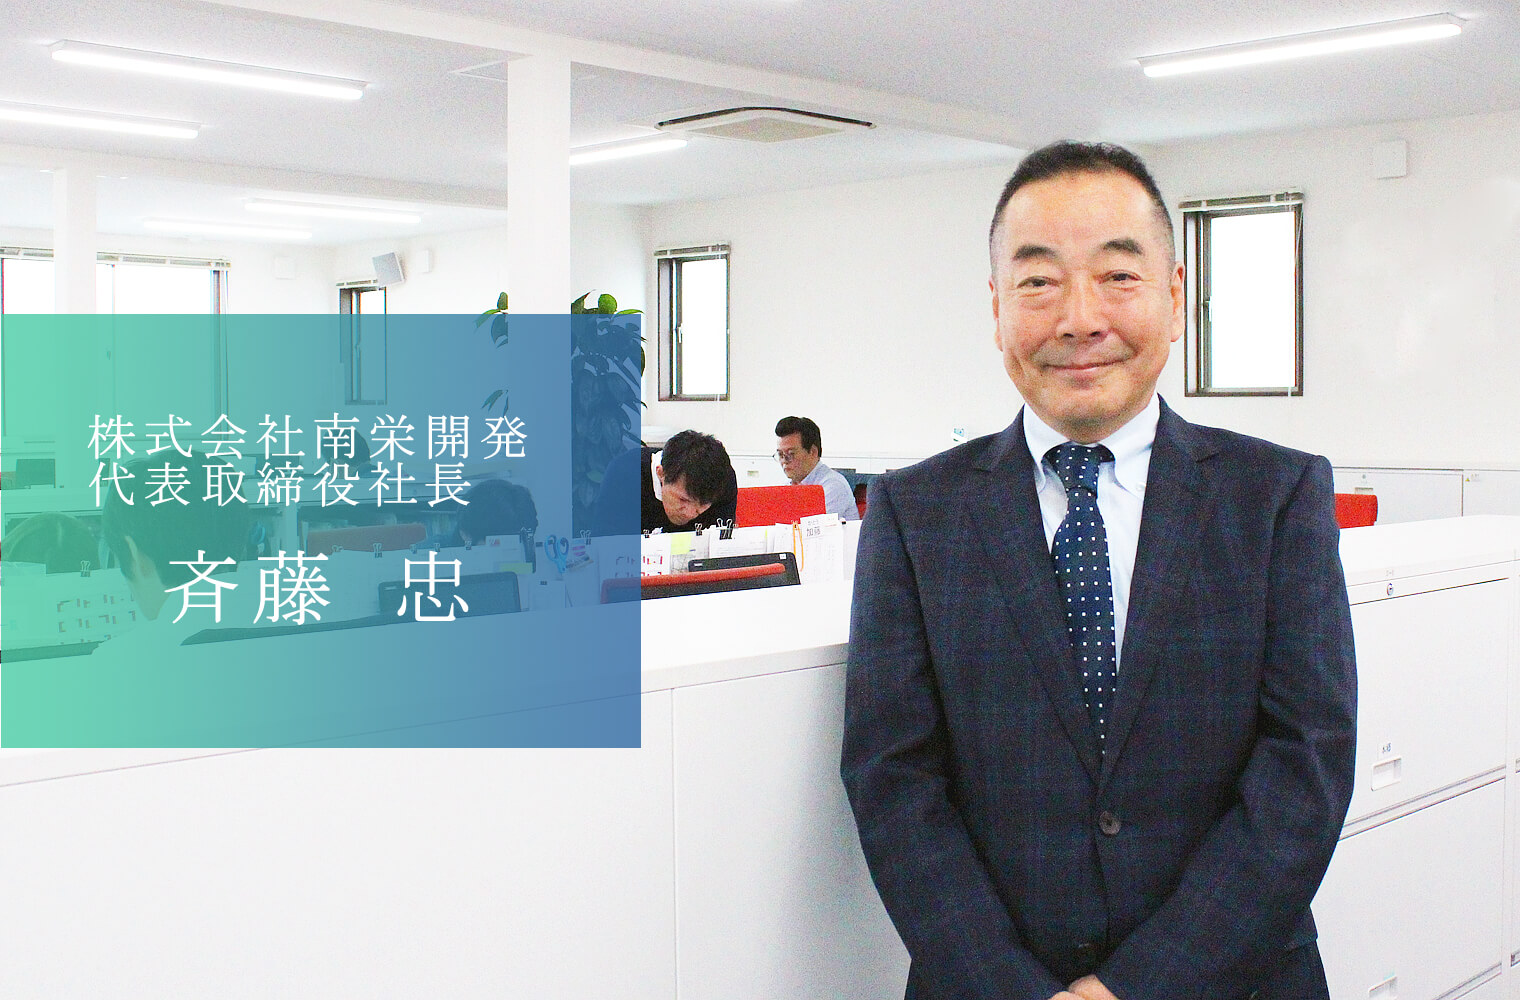 熊本唯一のデベロッパーとして 持続可能な街づくりに取り組む　株式会社南栄開発の斉藤忠社長